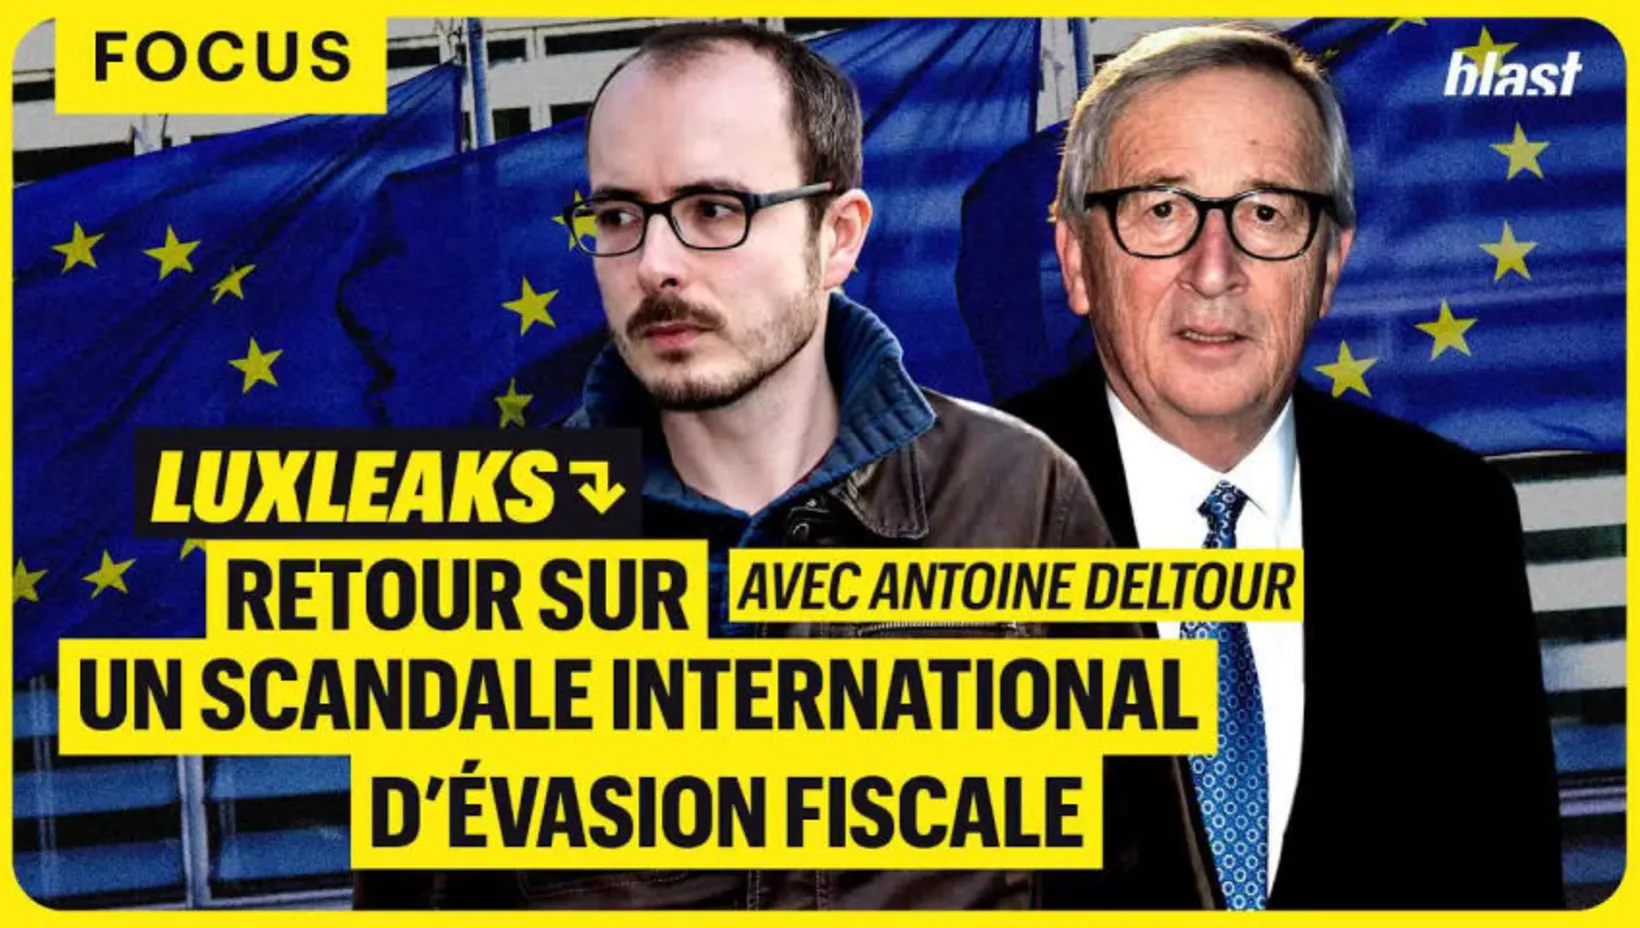 Luxleaks : retour sur un scandale international d'évasion fiscale